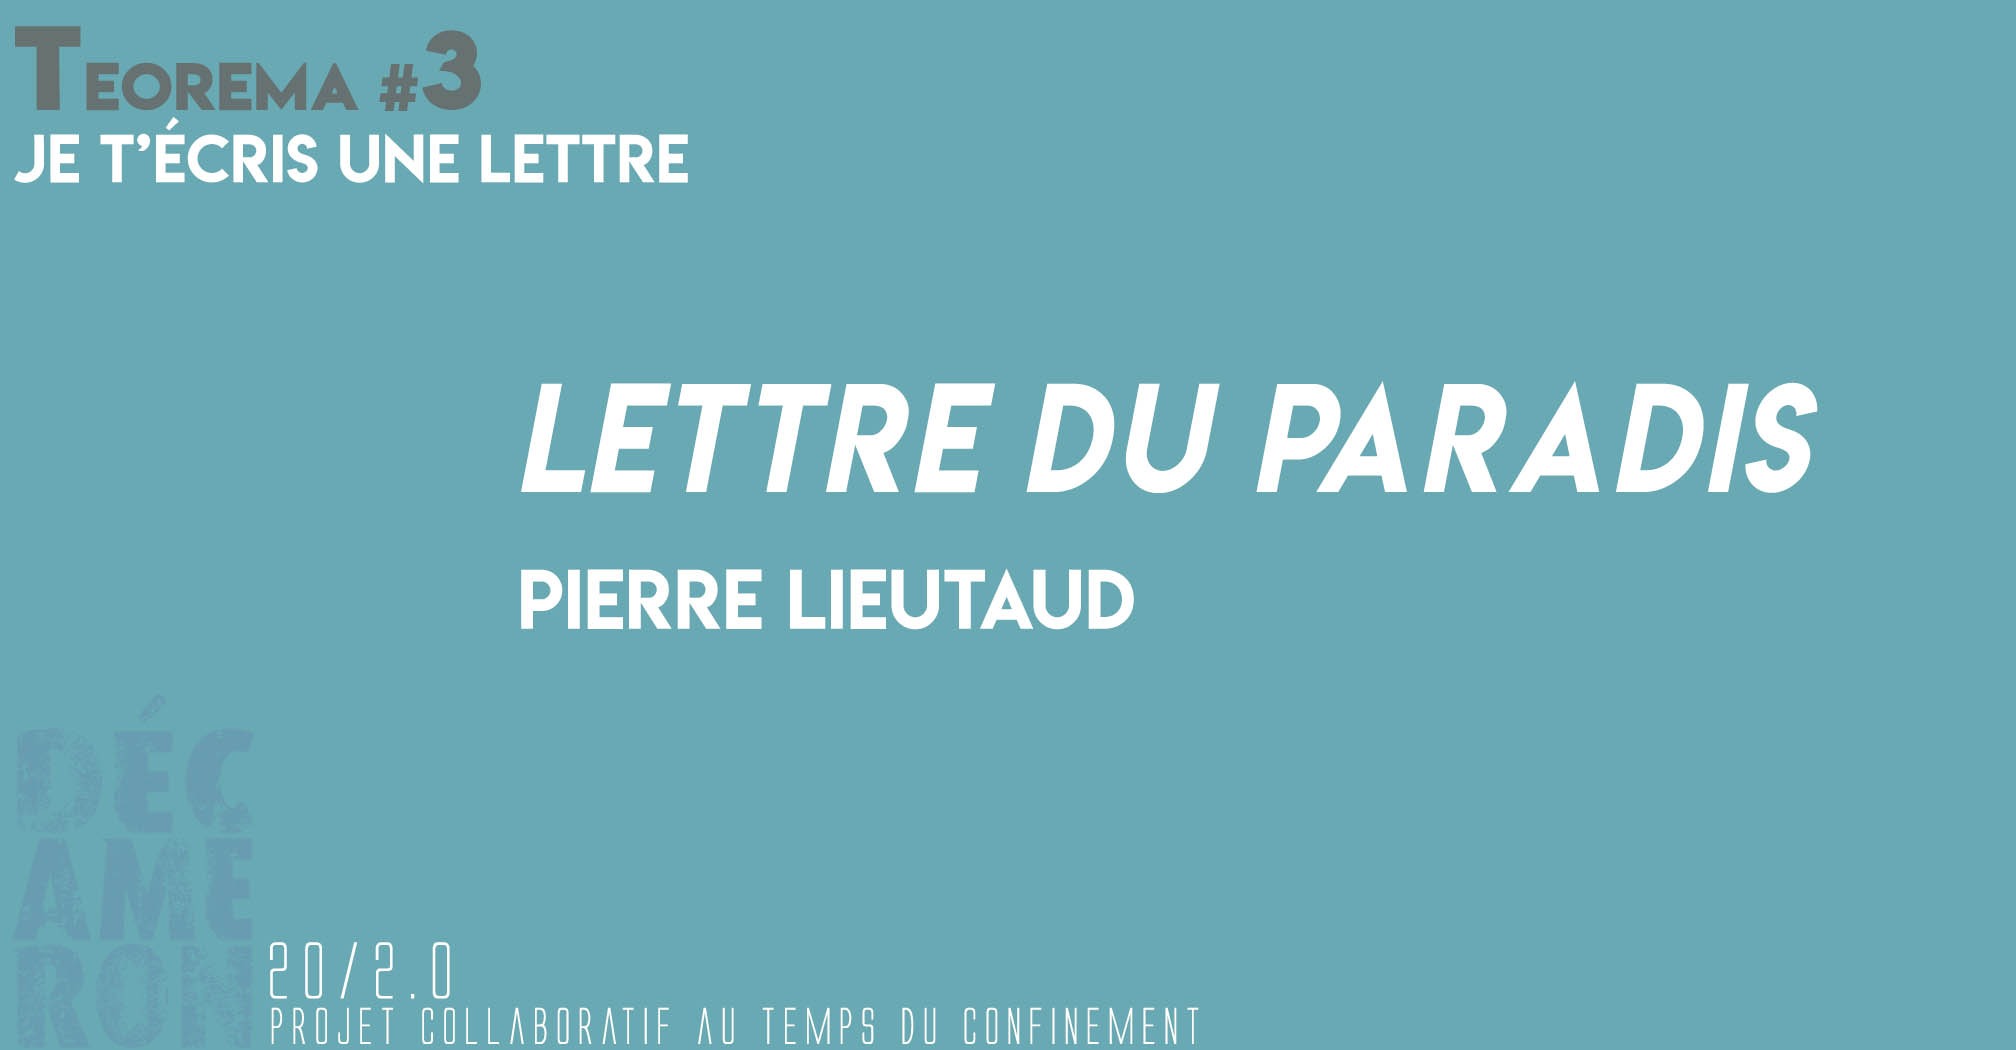 Lettre du paradis - Pierre Lieutaud